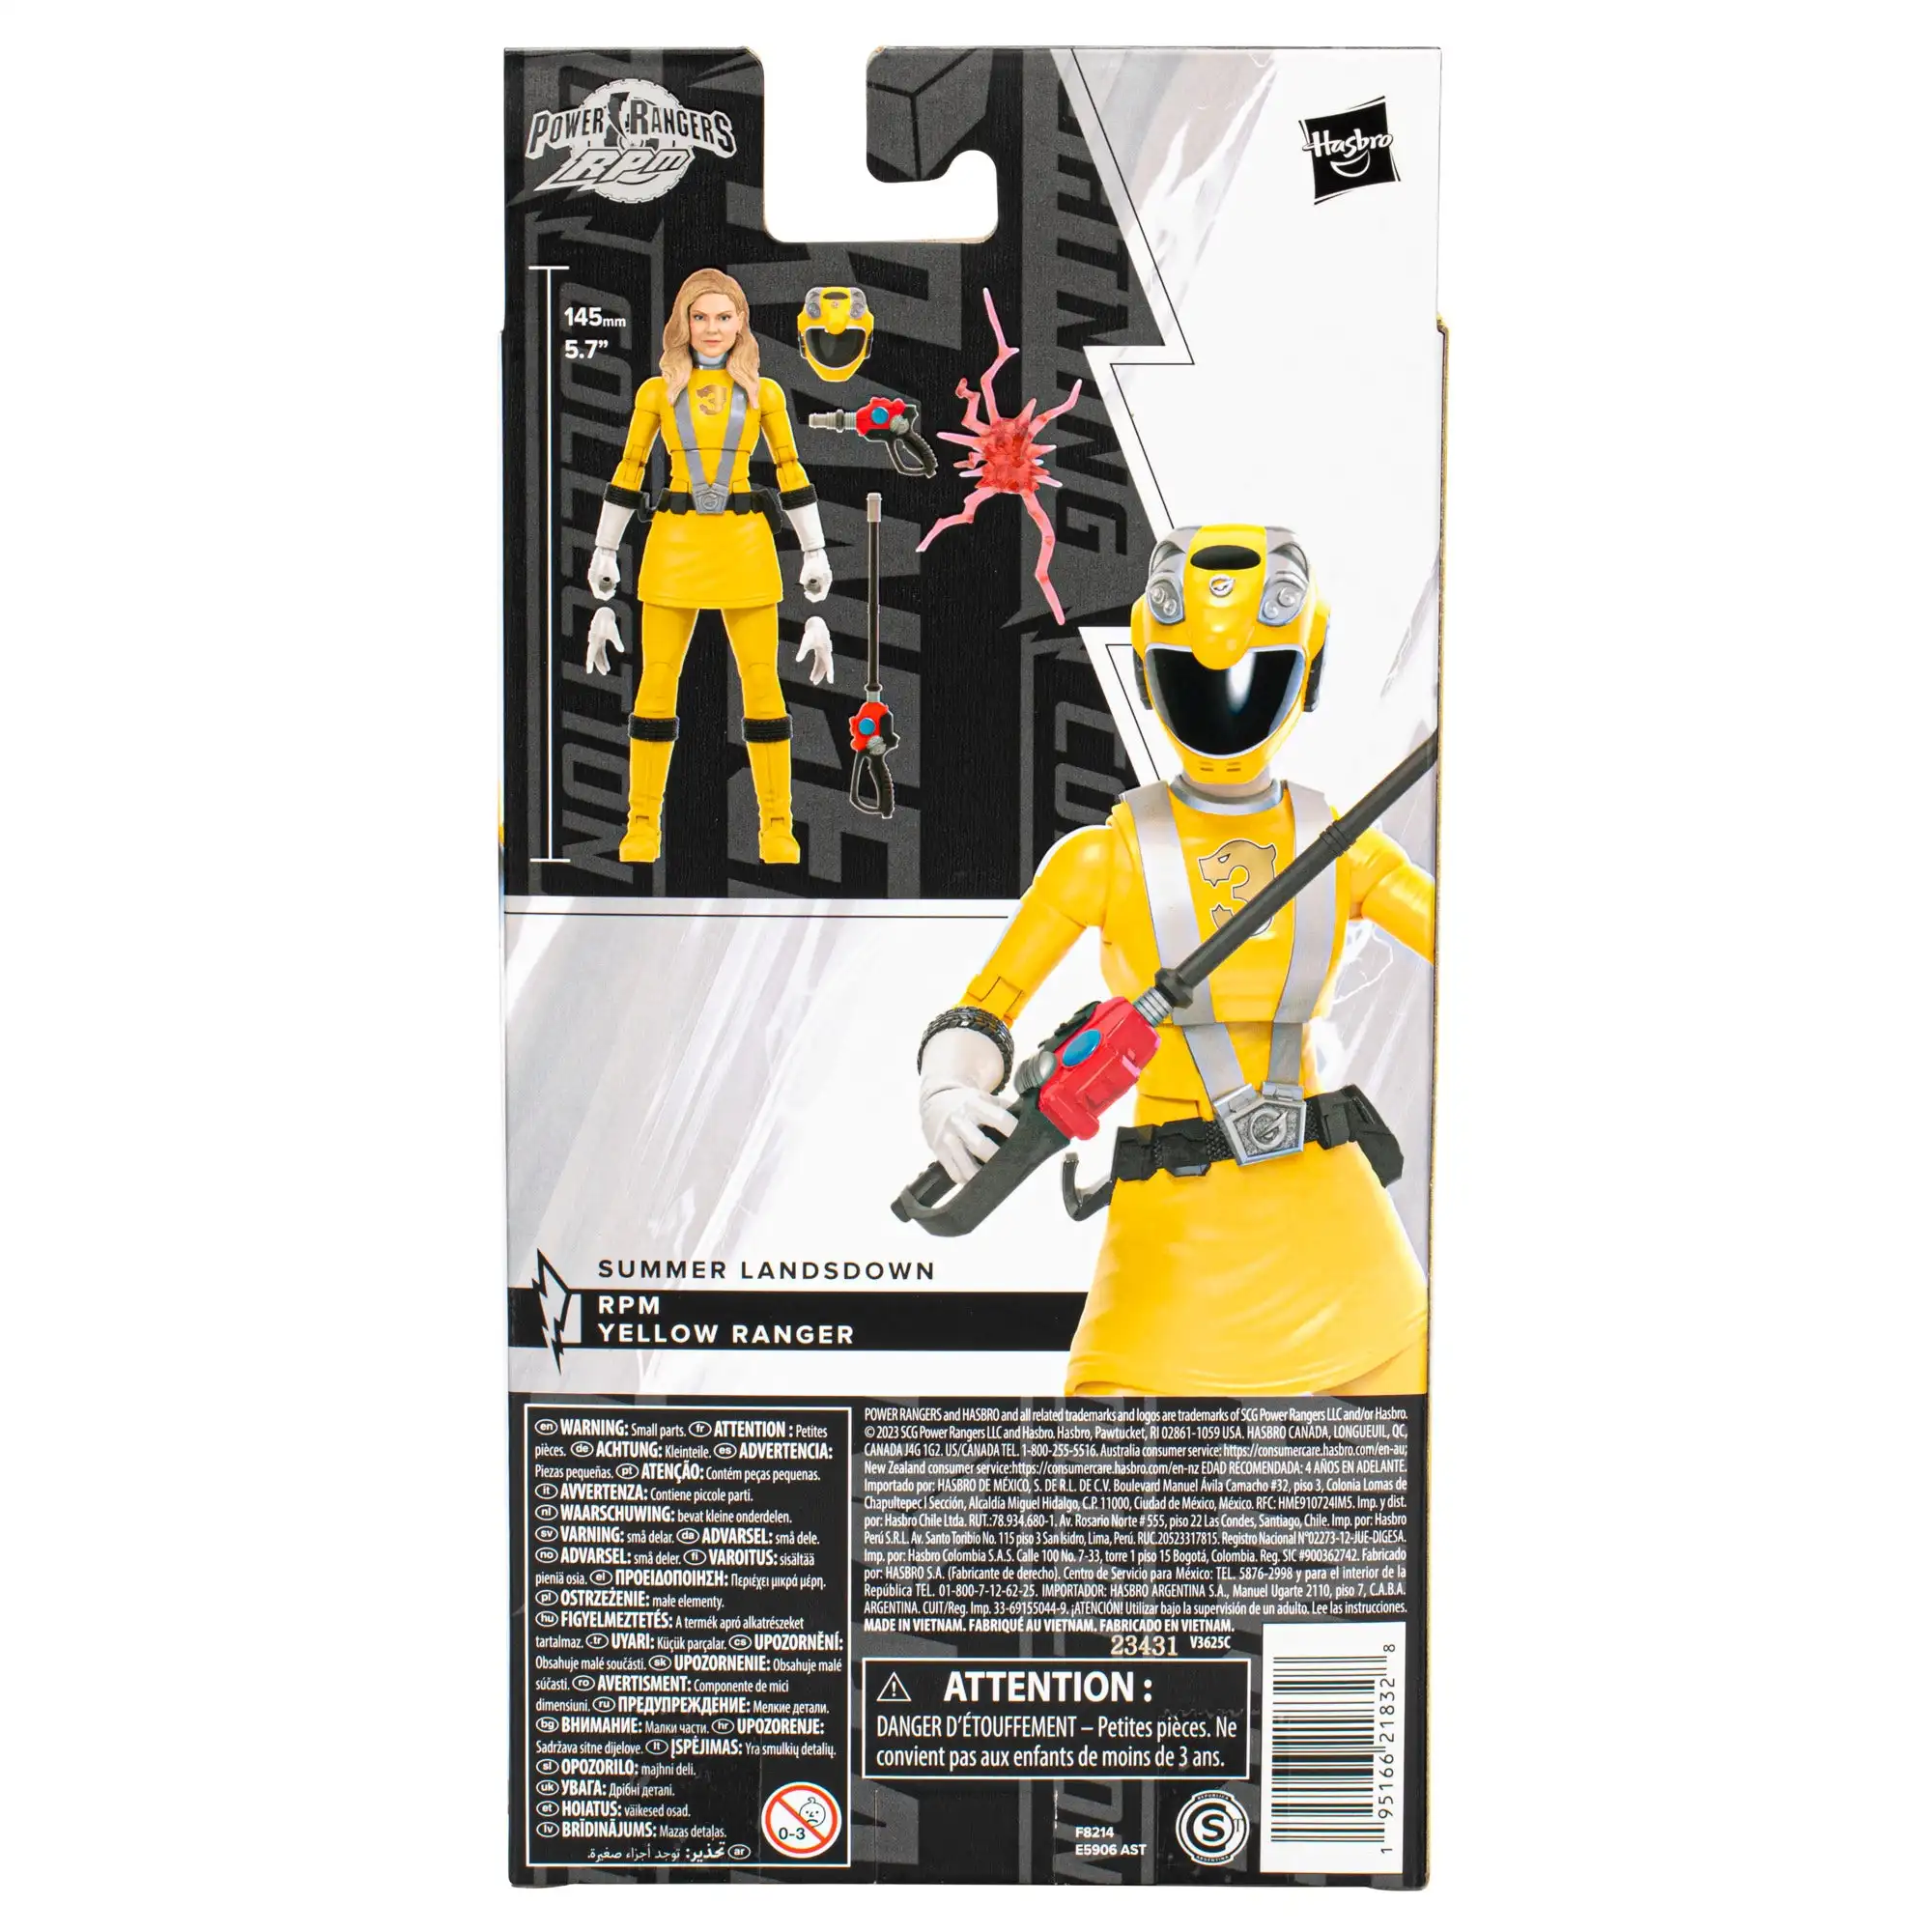 Коллекция Power Rangers Lightning, RPM, Желтый Рейнджер, 6-дюймовая коллекционная фигурка премиум-класса, игрушка с аксессуарами